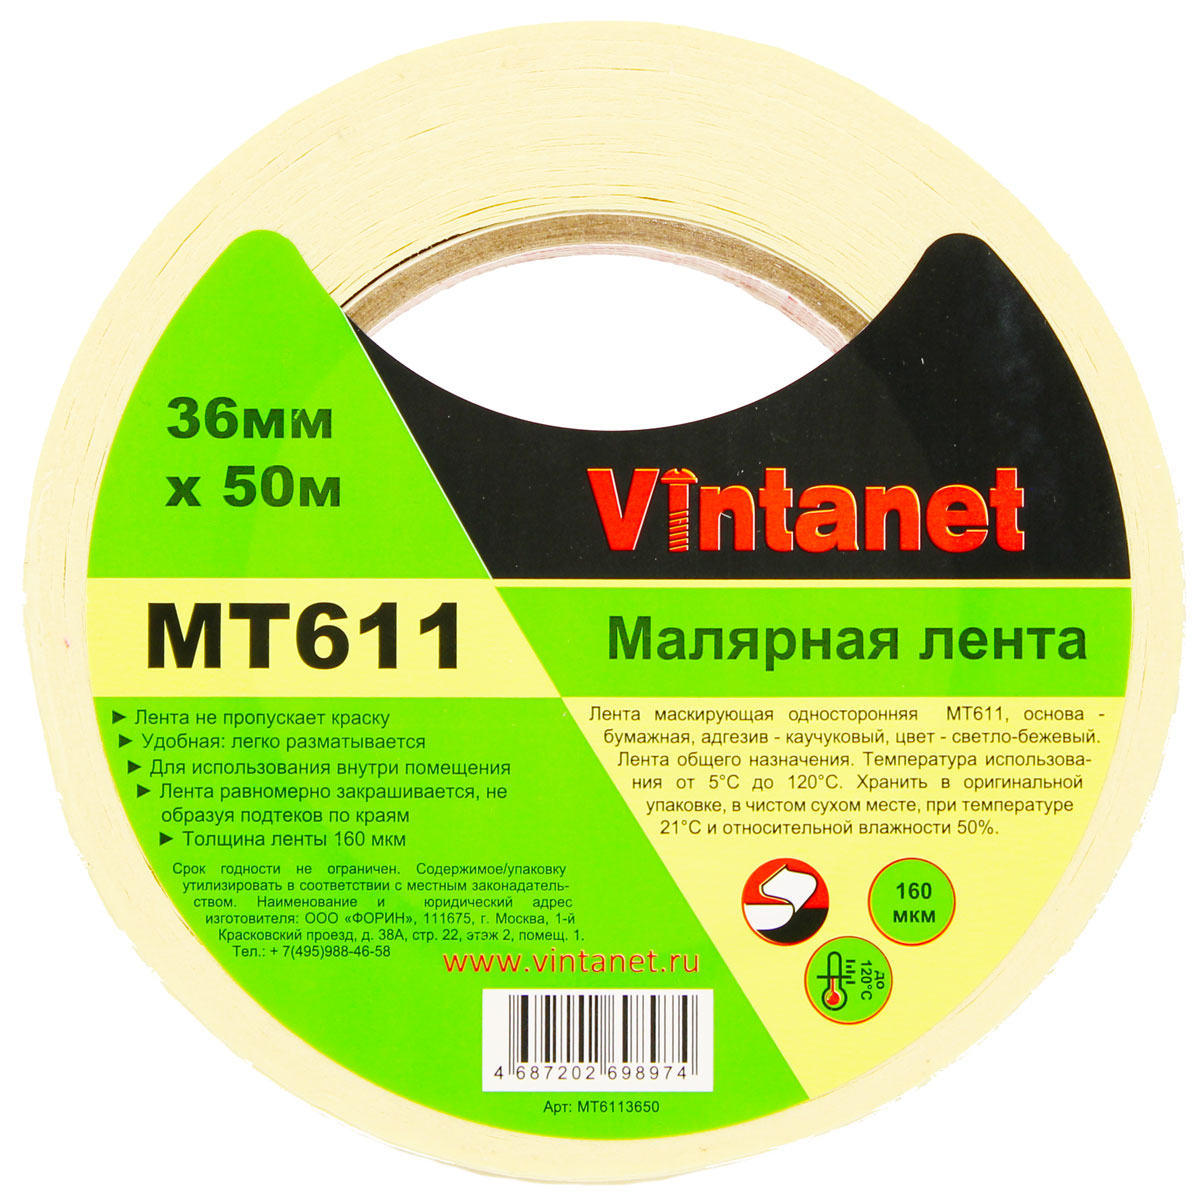 Лента малярная высокотемпературная Vintanet MT611, 120 С, 160 мкм, 36мм х 50м, MT6113650 малярная кисть virtus круглая standard 14 50 мм 001020014